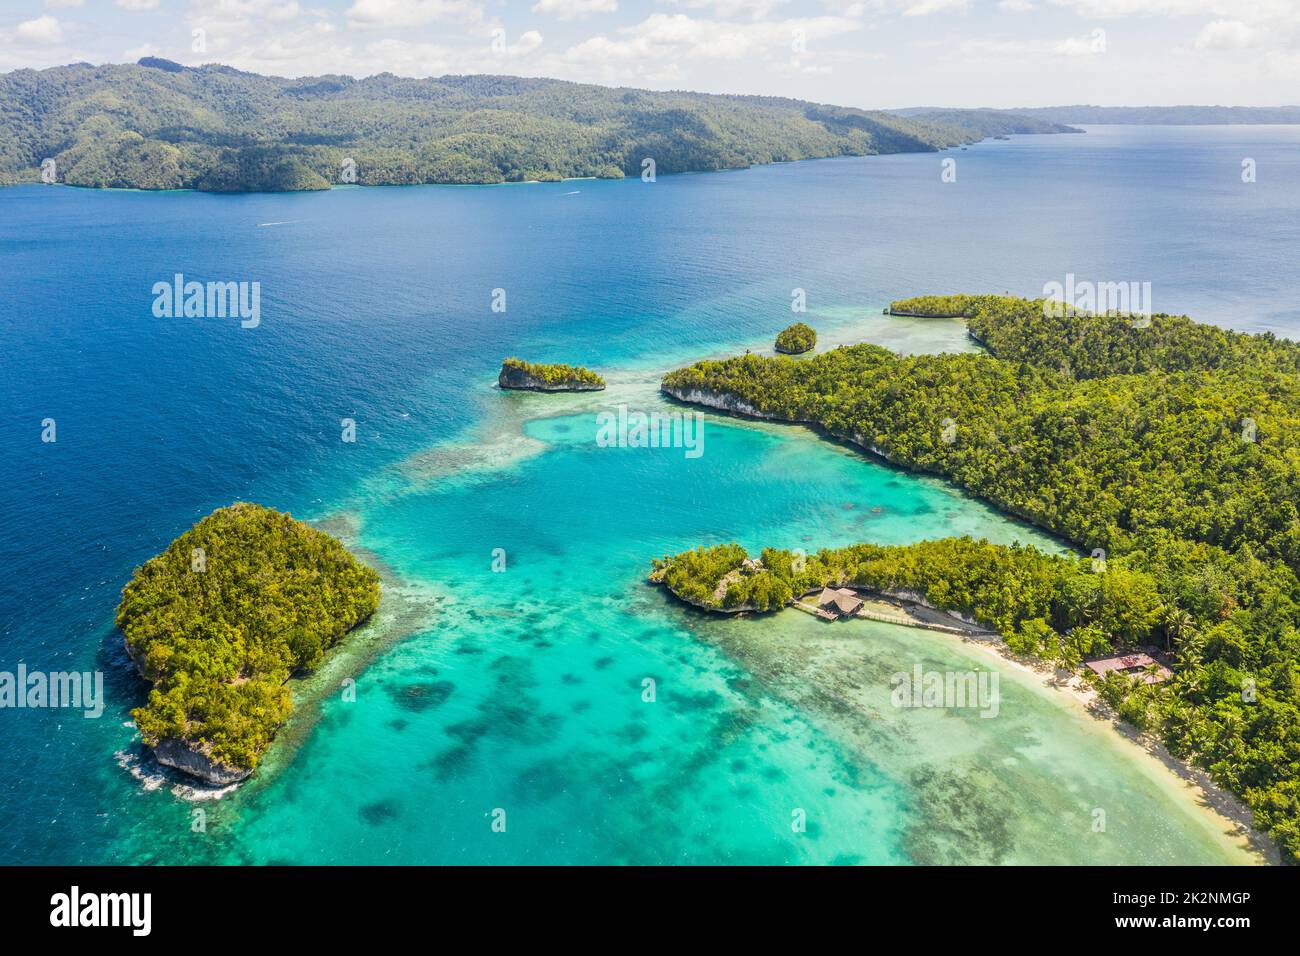 Un'isola più bella. Scatto ad alto angolo delle isole Raja Ampat circondate dall'Oceano Indo-Pacifico. Foto Stock